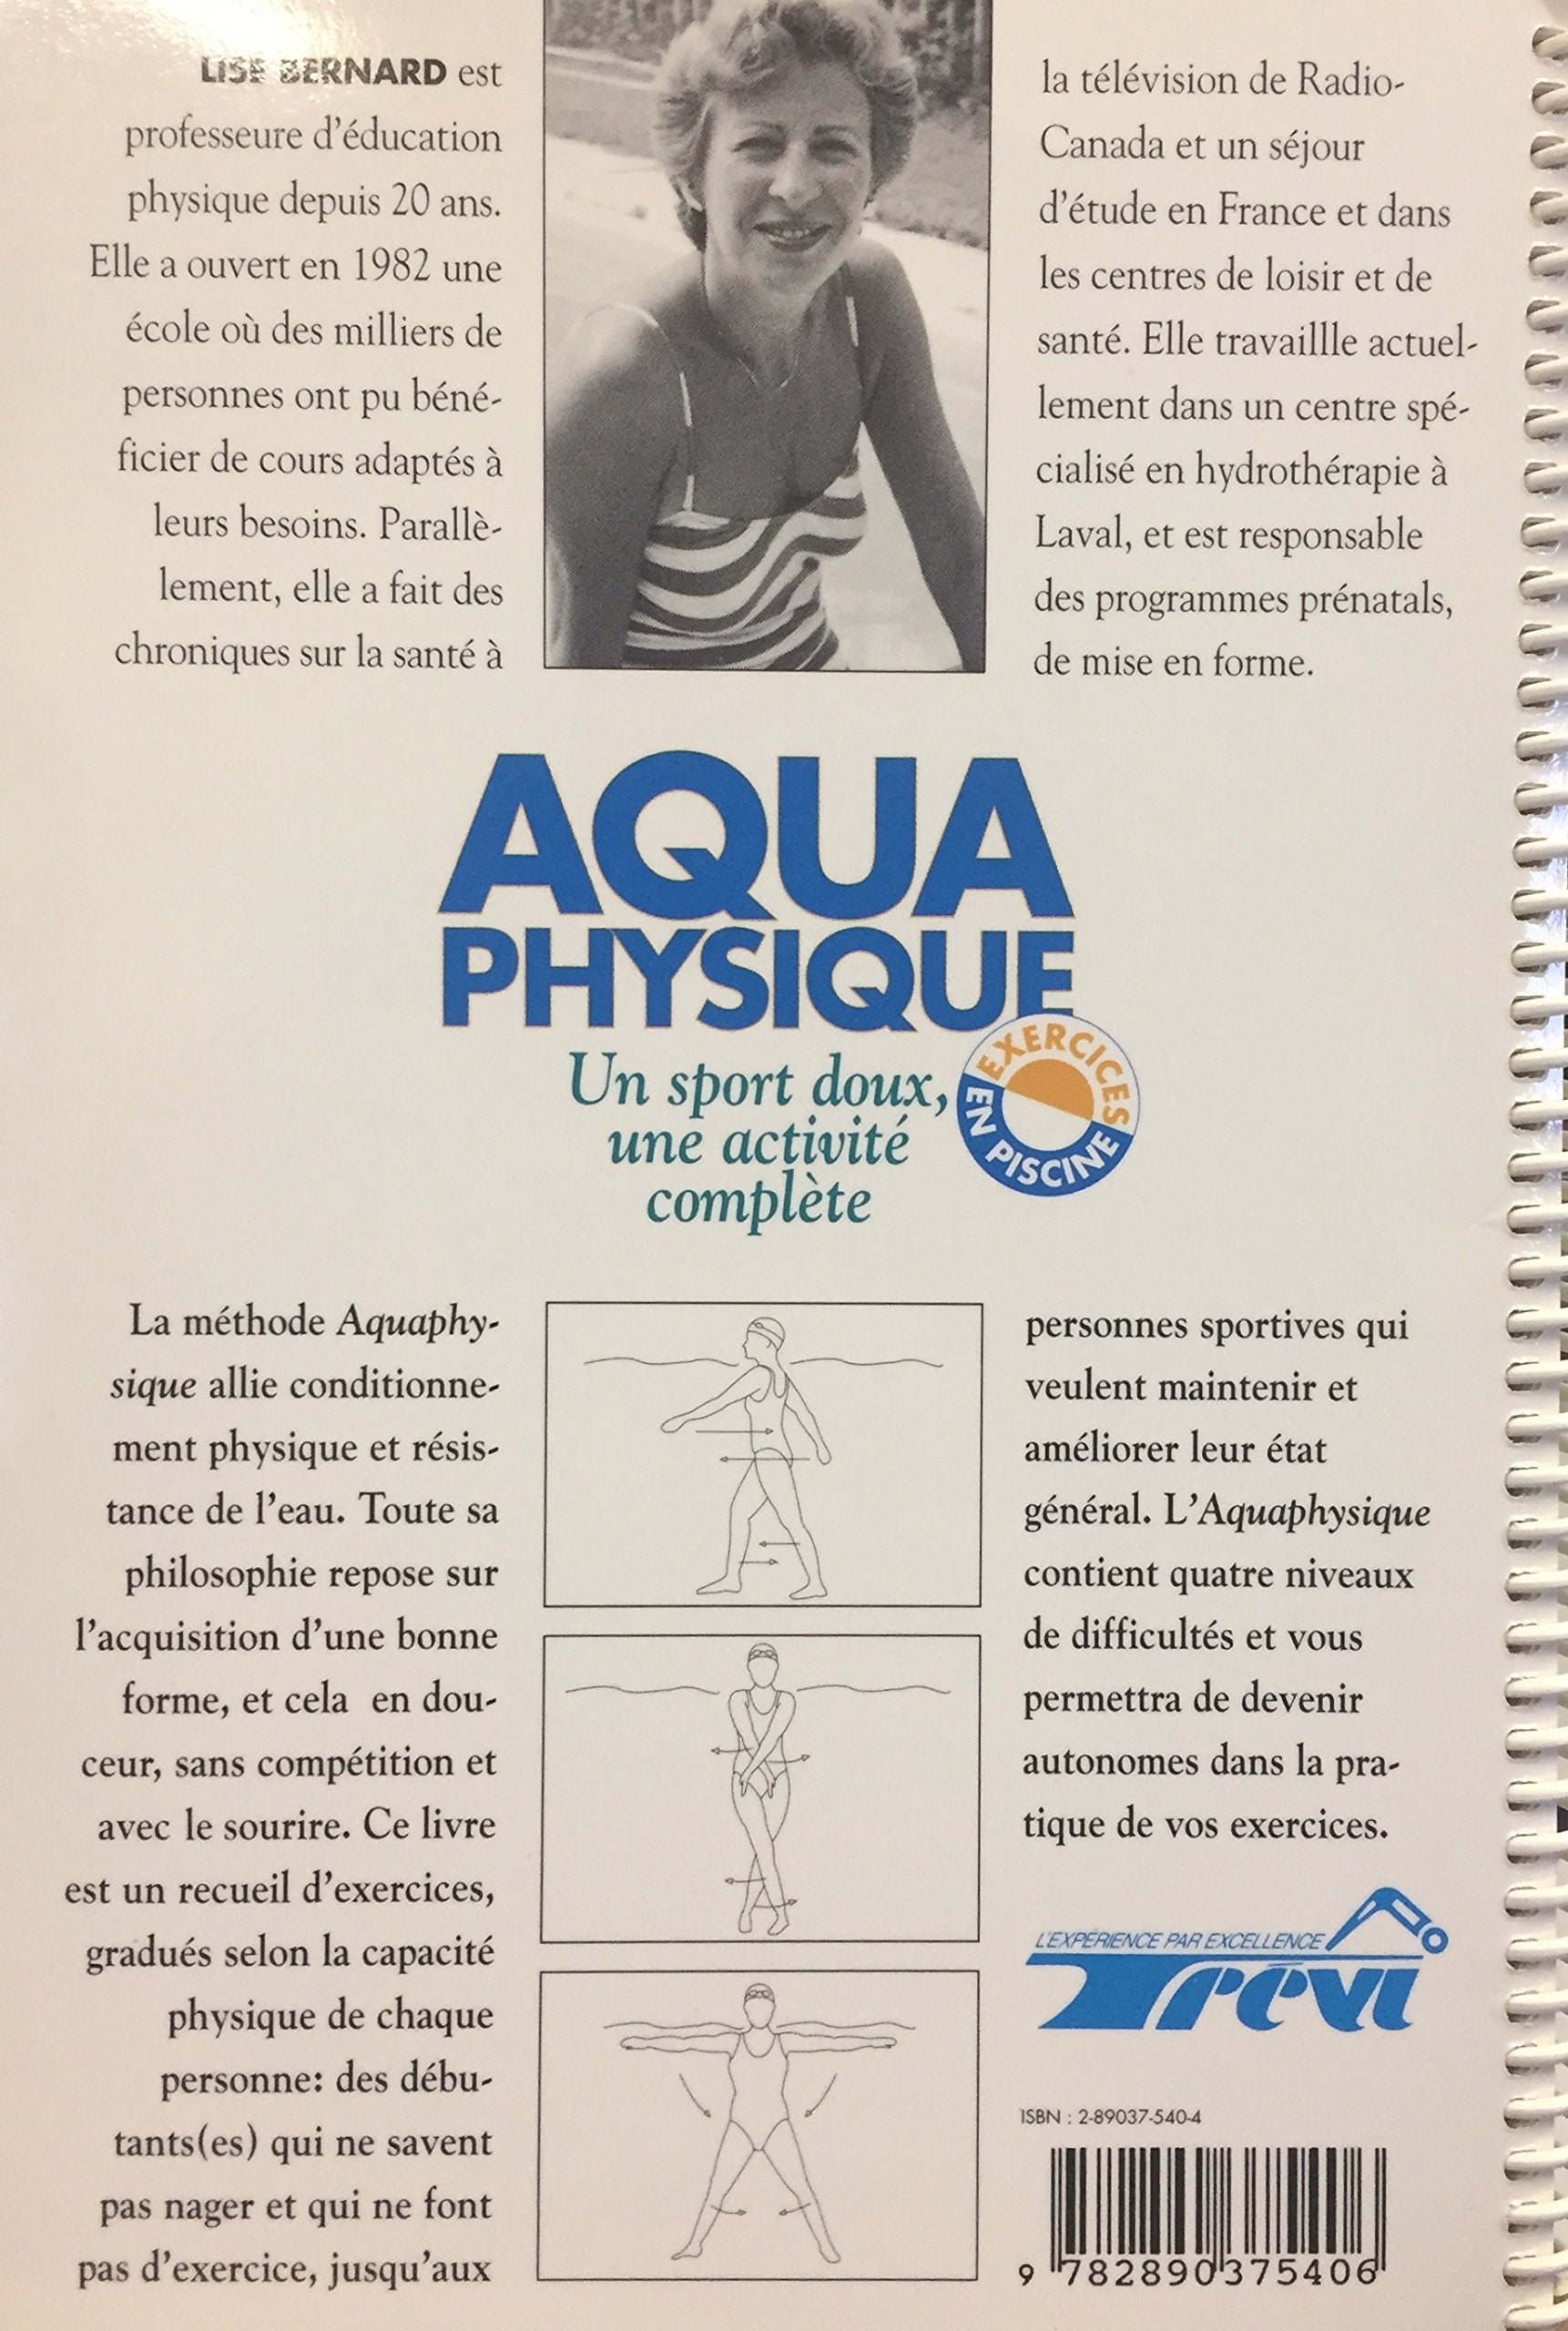 Aqua Physique : Un sport doux, une activité complète (Lise Bernard)